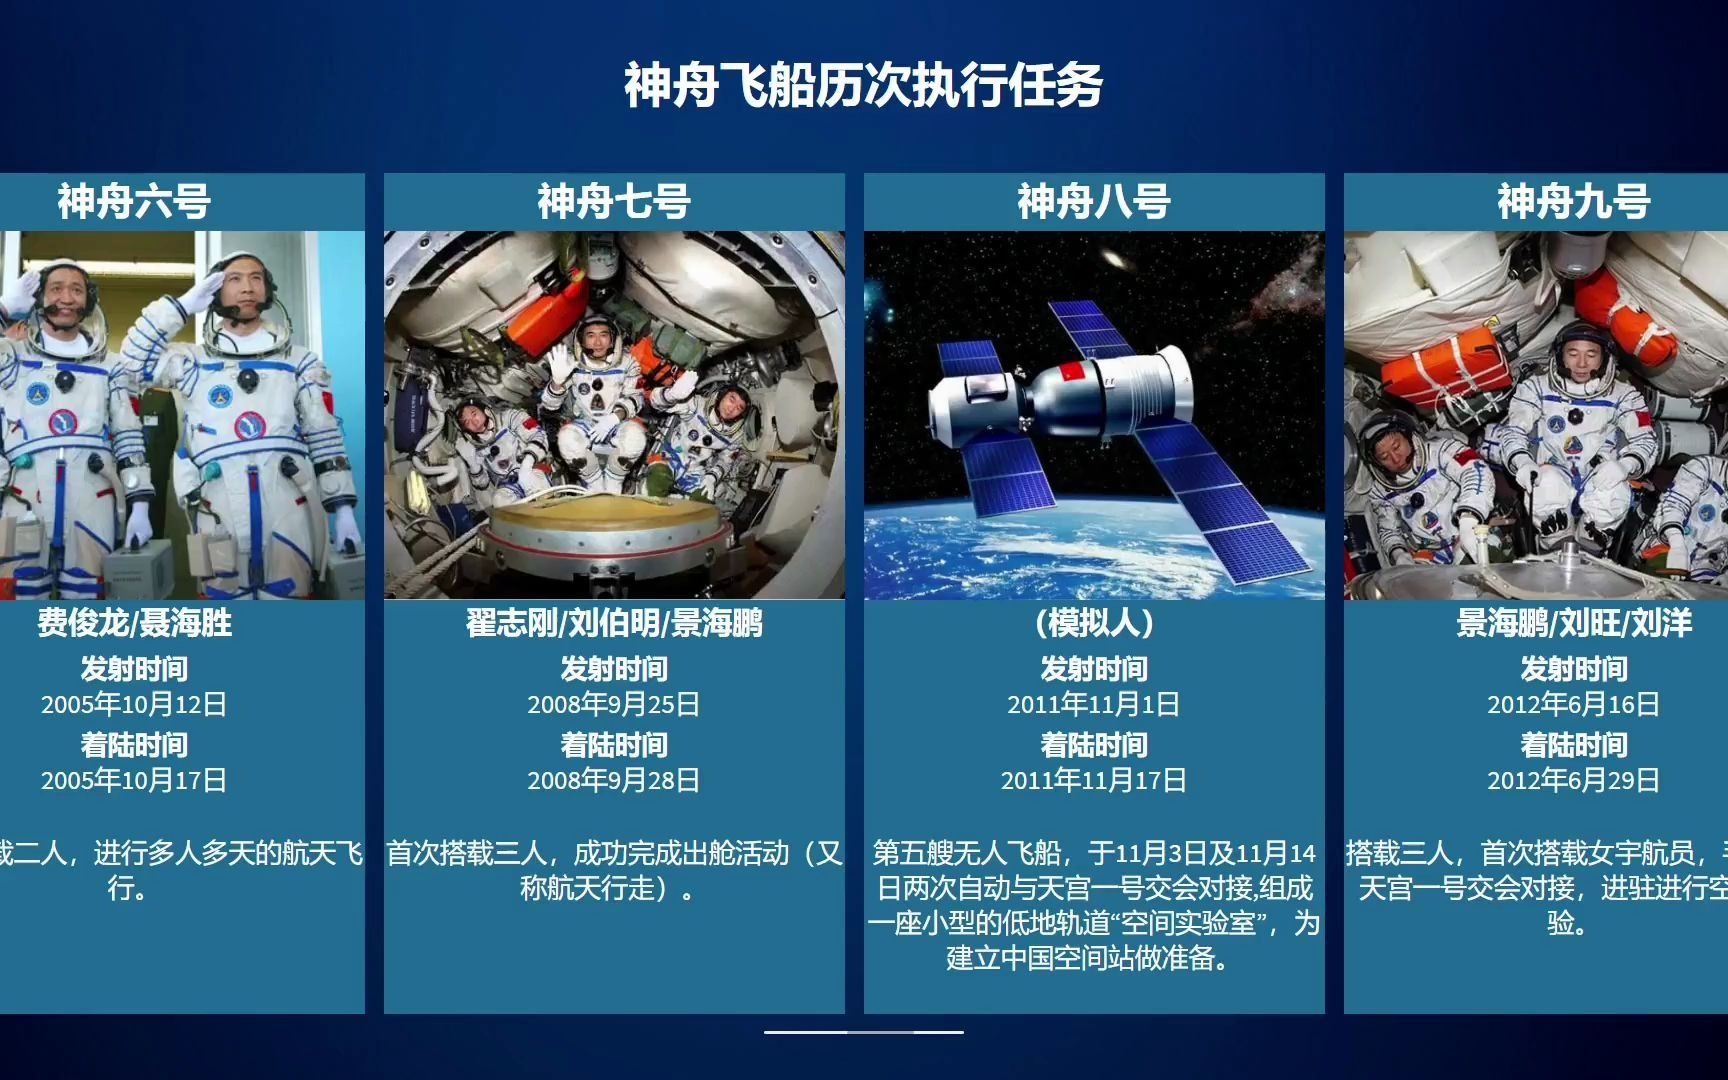 【中国加油】神舟飞船历次执行任务,你在电视上看过几次?